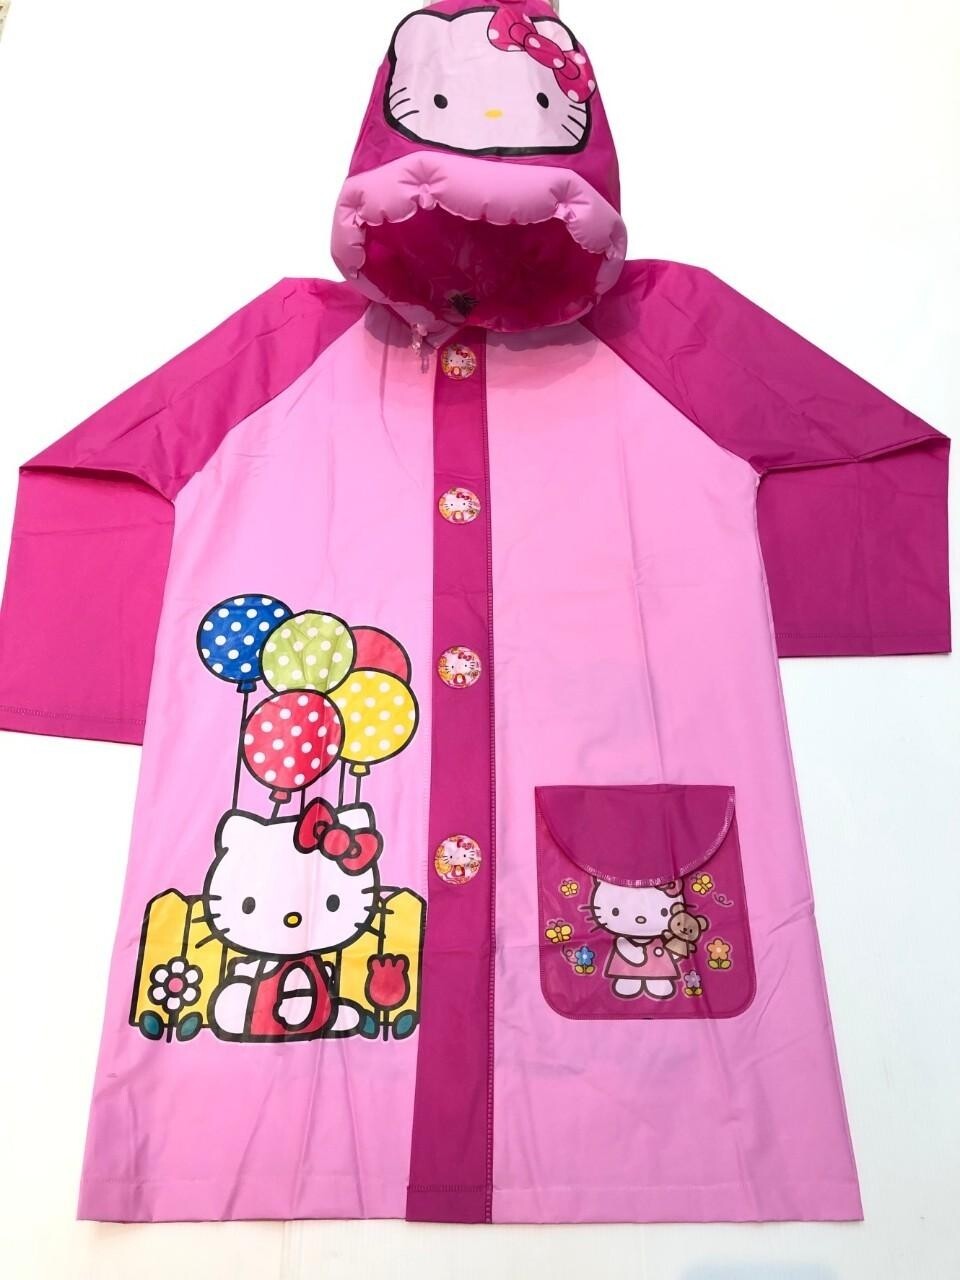 🎀พร้อมส่ง🎀 เสื้อกันฝนเด็ก ชุดกันฝนเด็กรุ่นไม่ขยายหลัง เสื้อกันฝน ชุดกันน้ำ ลายการ์ตูน น่ารัก (ขนาด 100-130 CM)